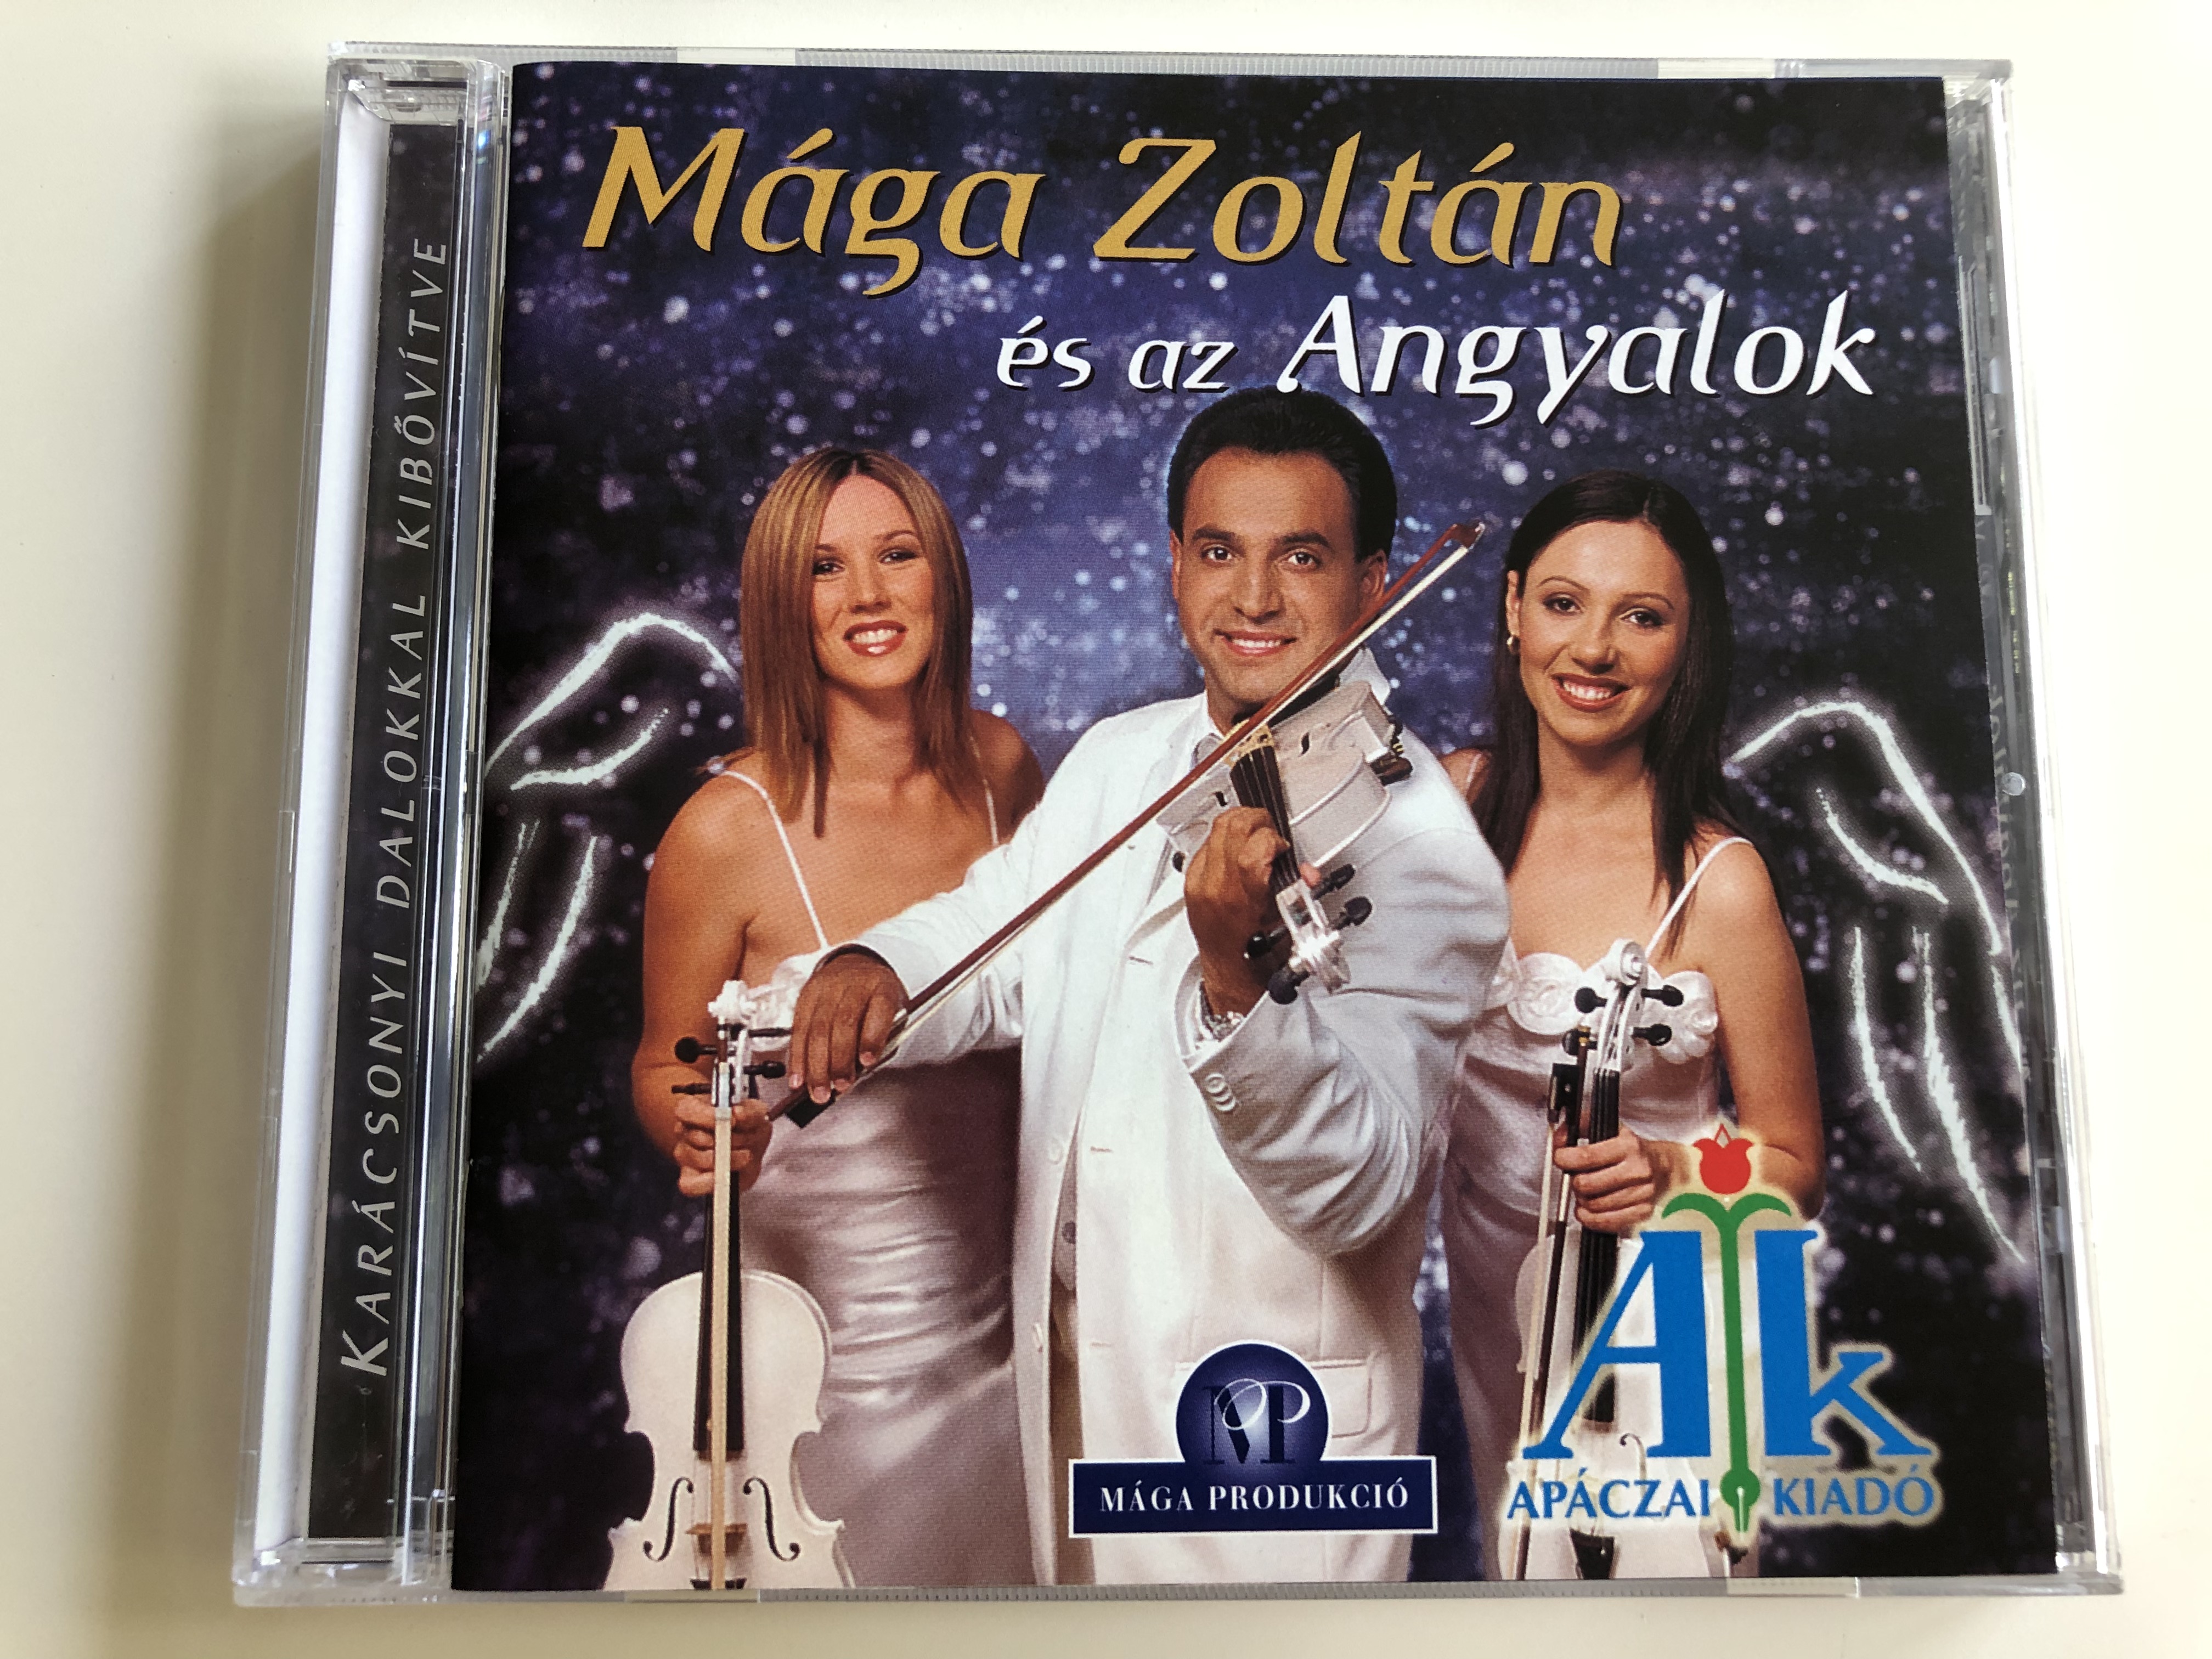 m-ga-zolt-n-s-az-angyalok-kar-csonyi-dalokkal-kib-v-tve-audio-cd-2003-1-.jpg